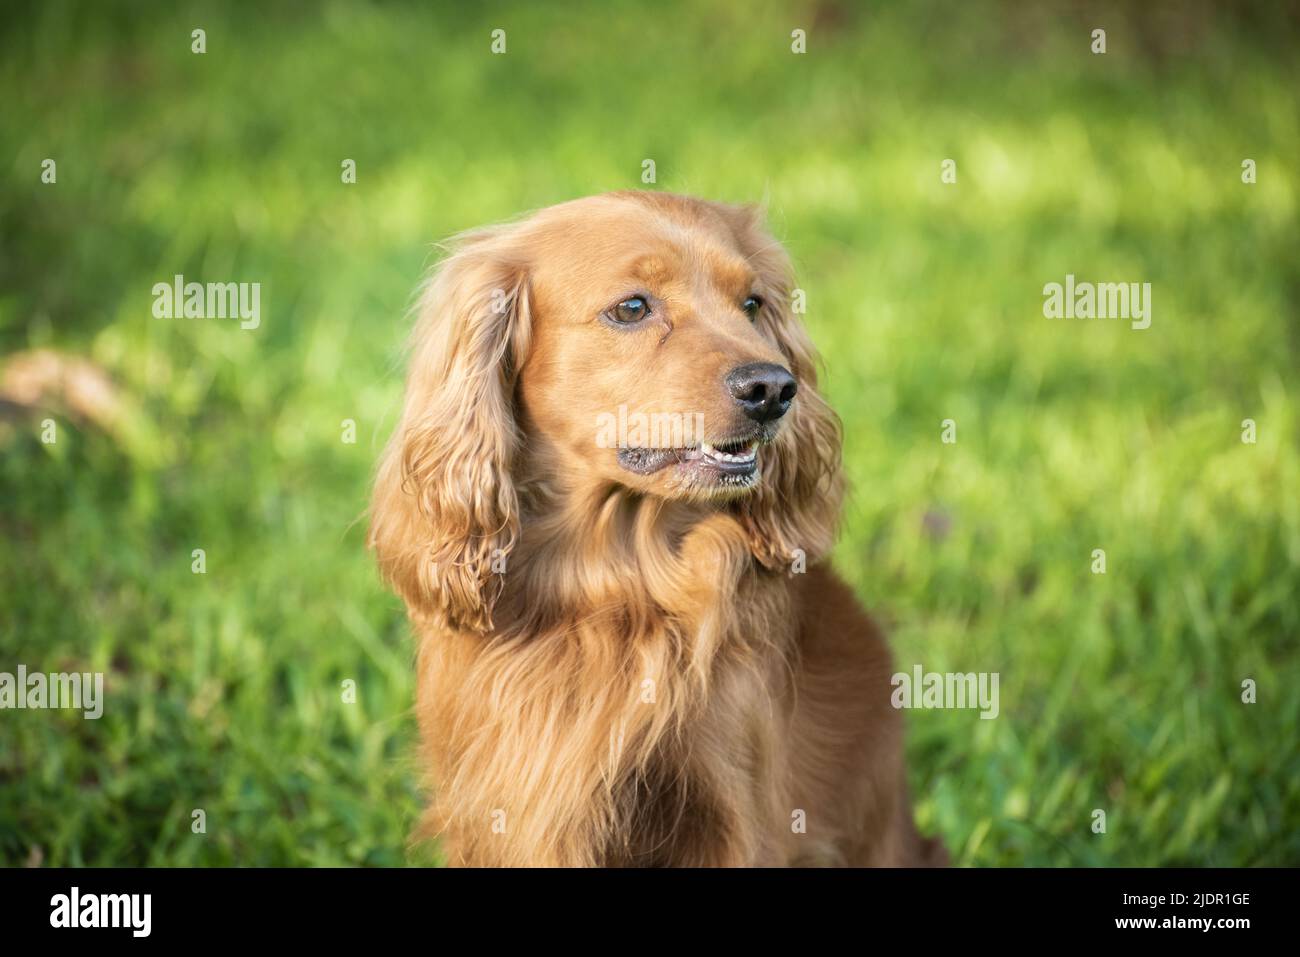 El perrito de oro del perrito descansó en la hierba Foto de stock